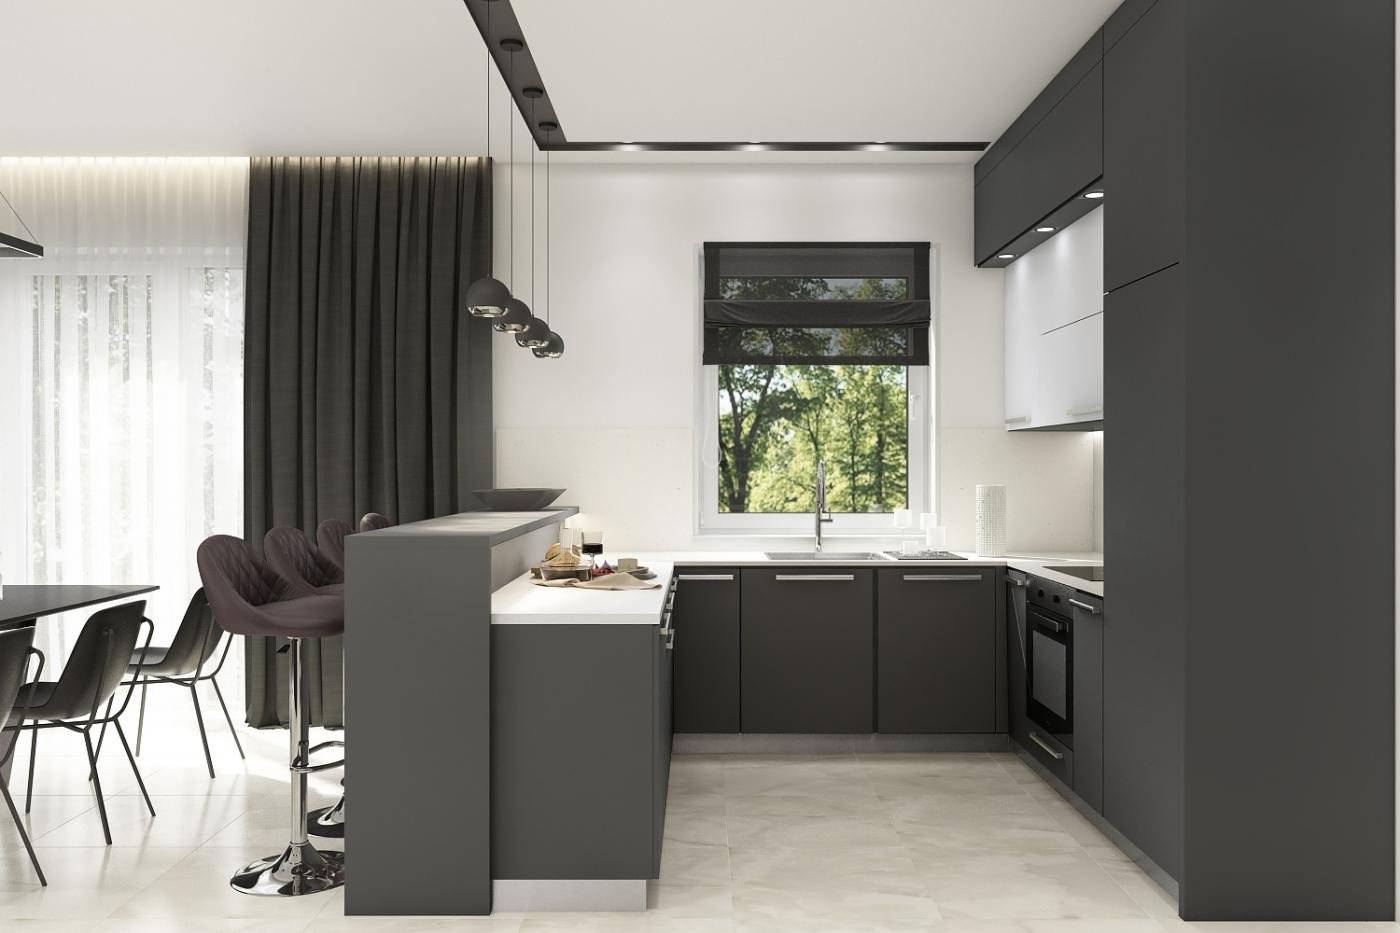 Кухня в стиле минимализм - фото интерьера кухни гостиной в стиле минимализм, шторы, мебель и кухонный гарнитур в стиле минимализм.